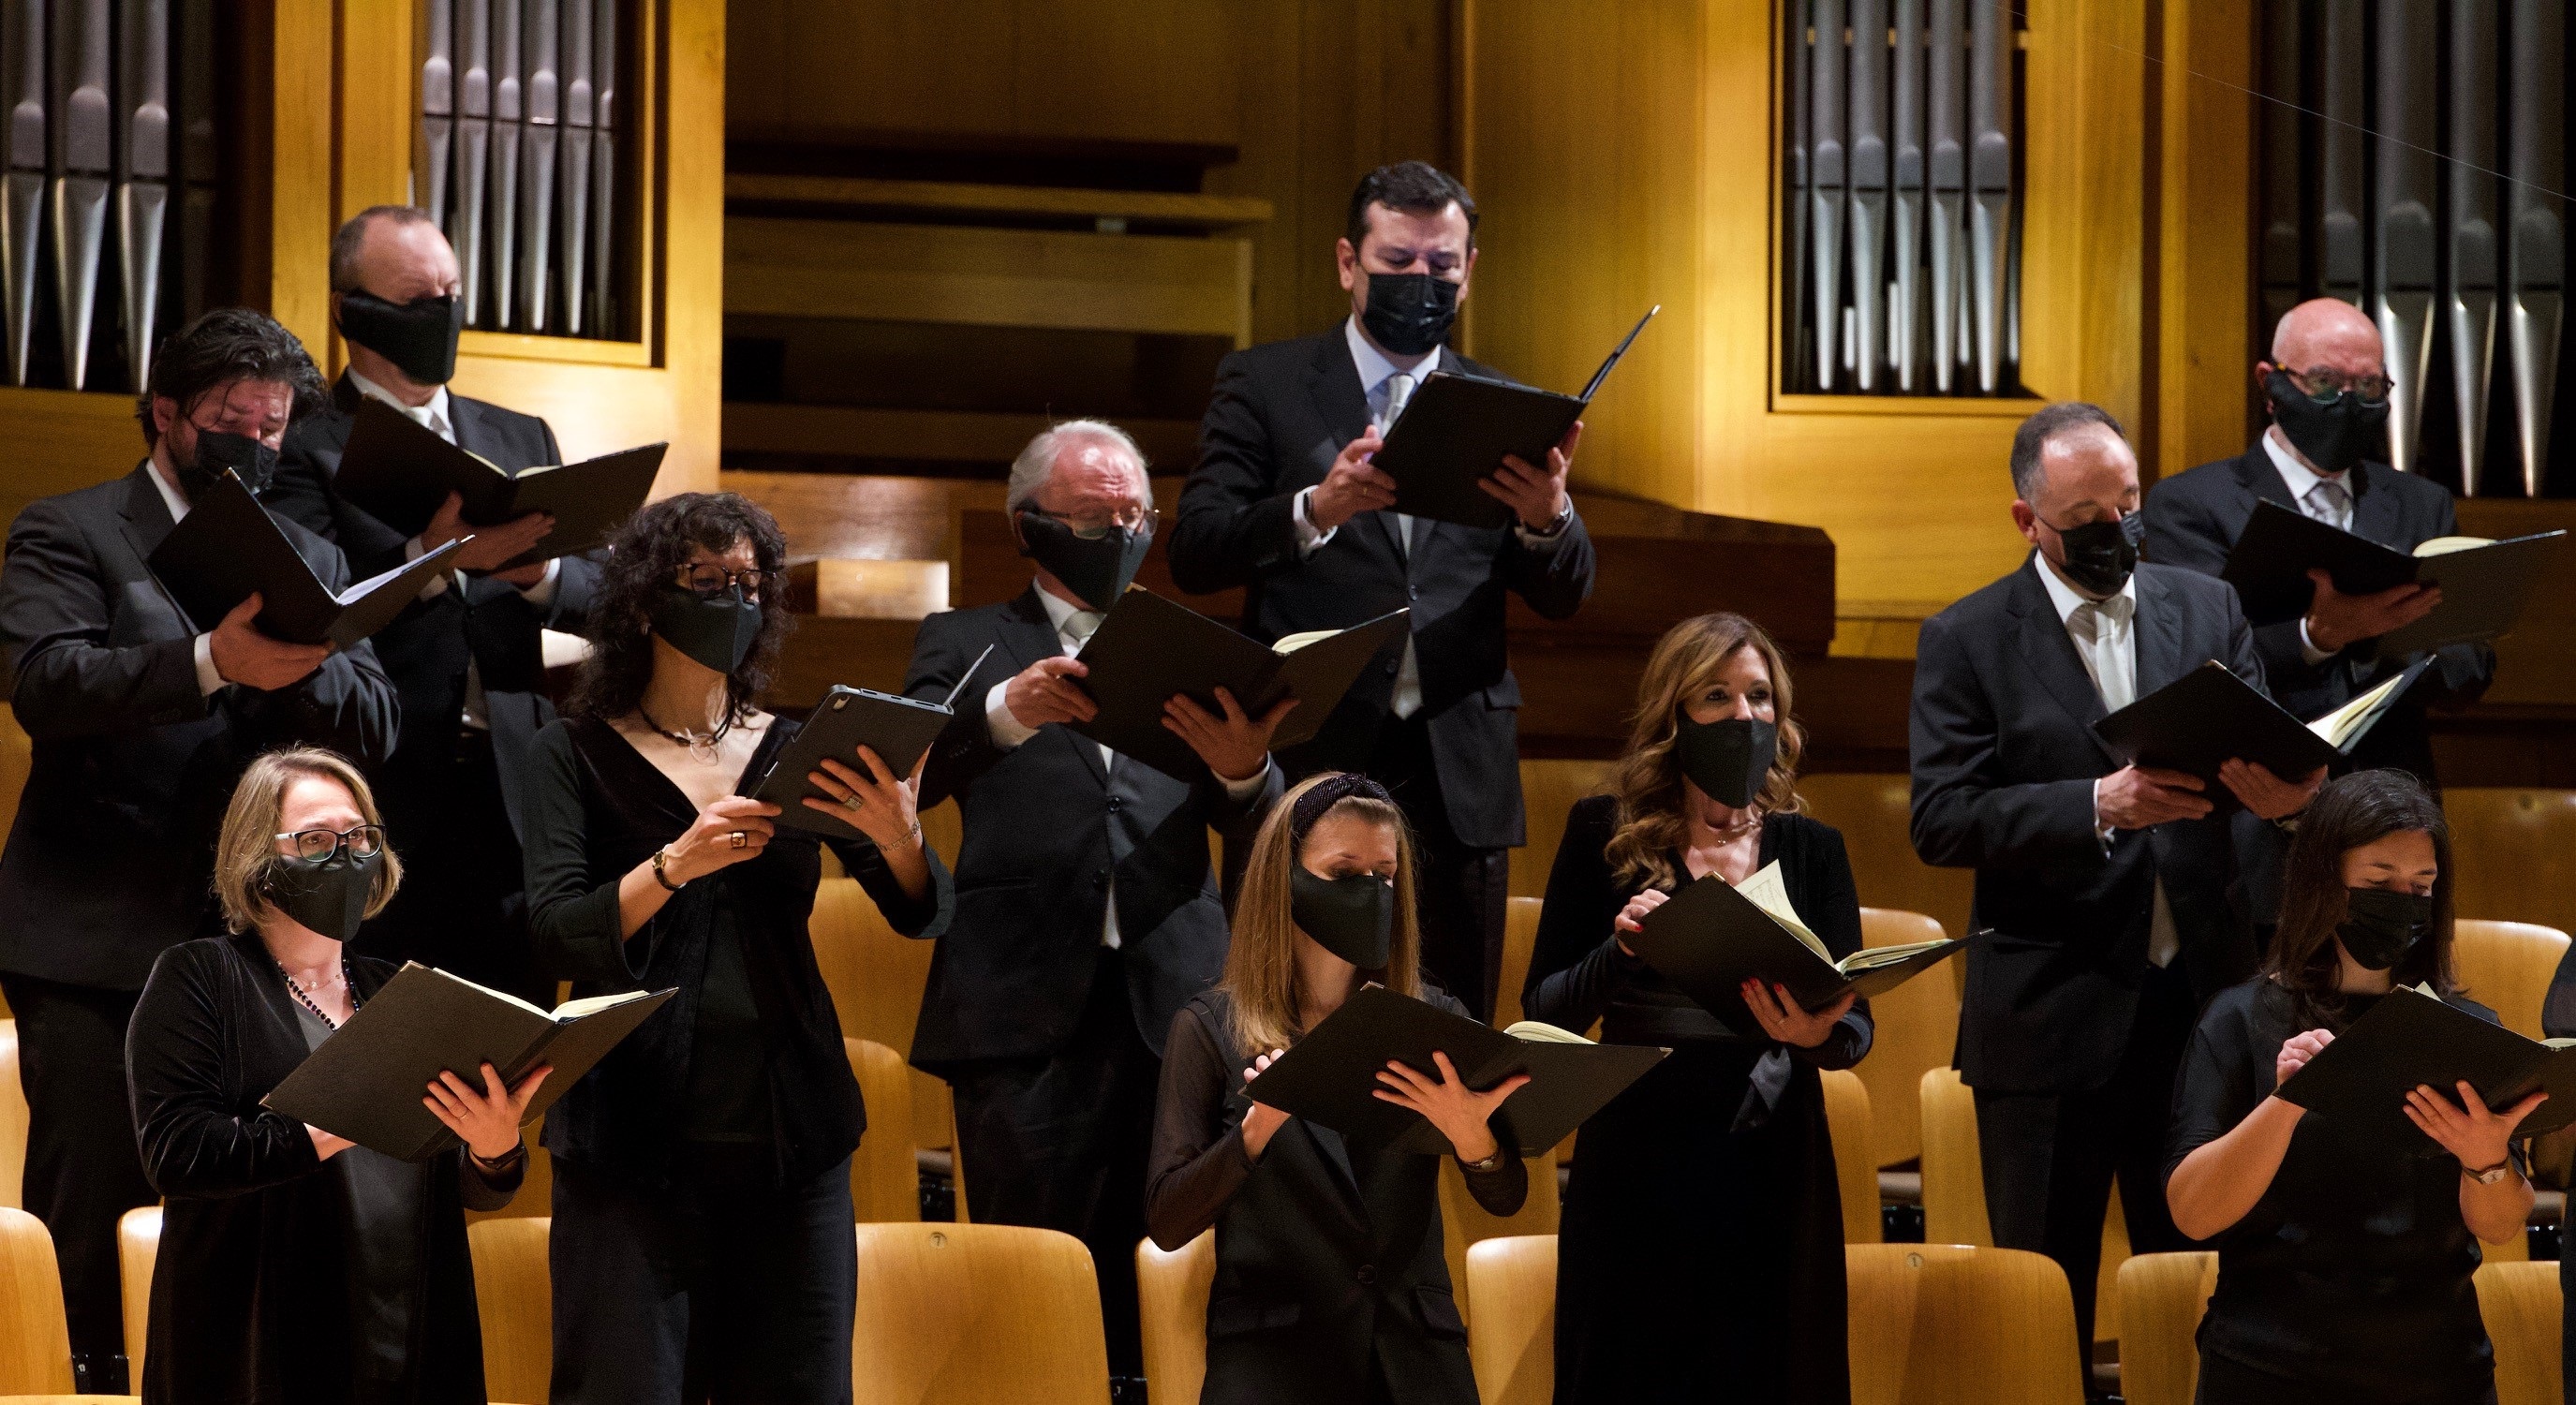 La Orquesta y Coro Nacionales de España estrenarán la obra Hacia la luz del compositor Sánchez-Verdú e interpretarán dos obras de Mendelssohn